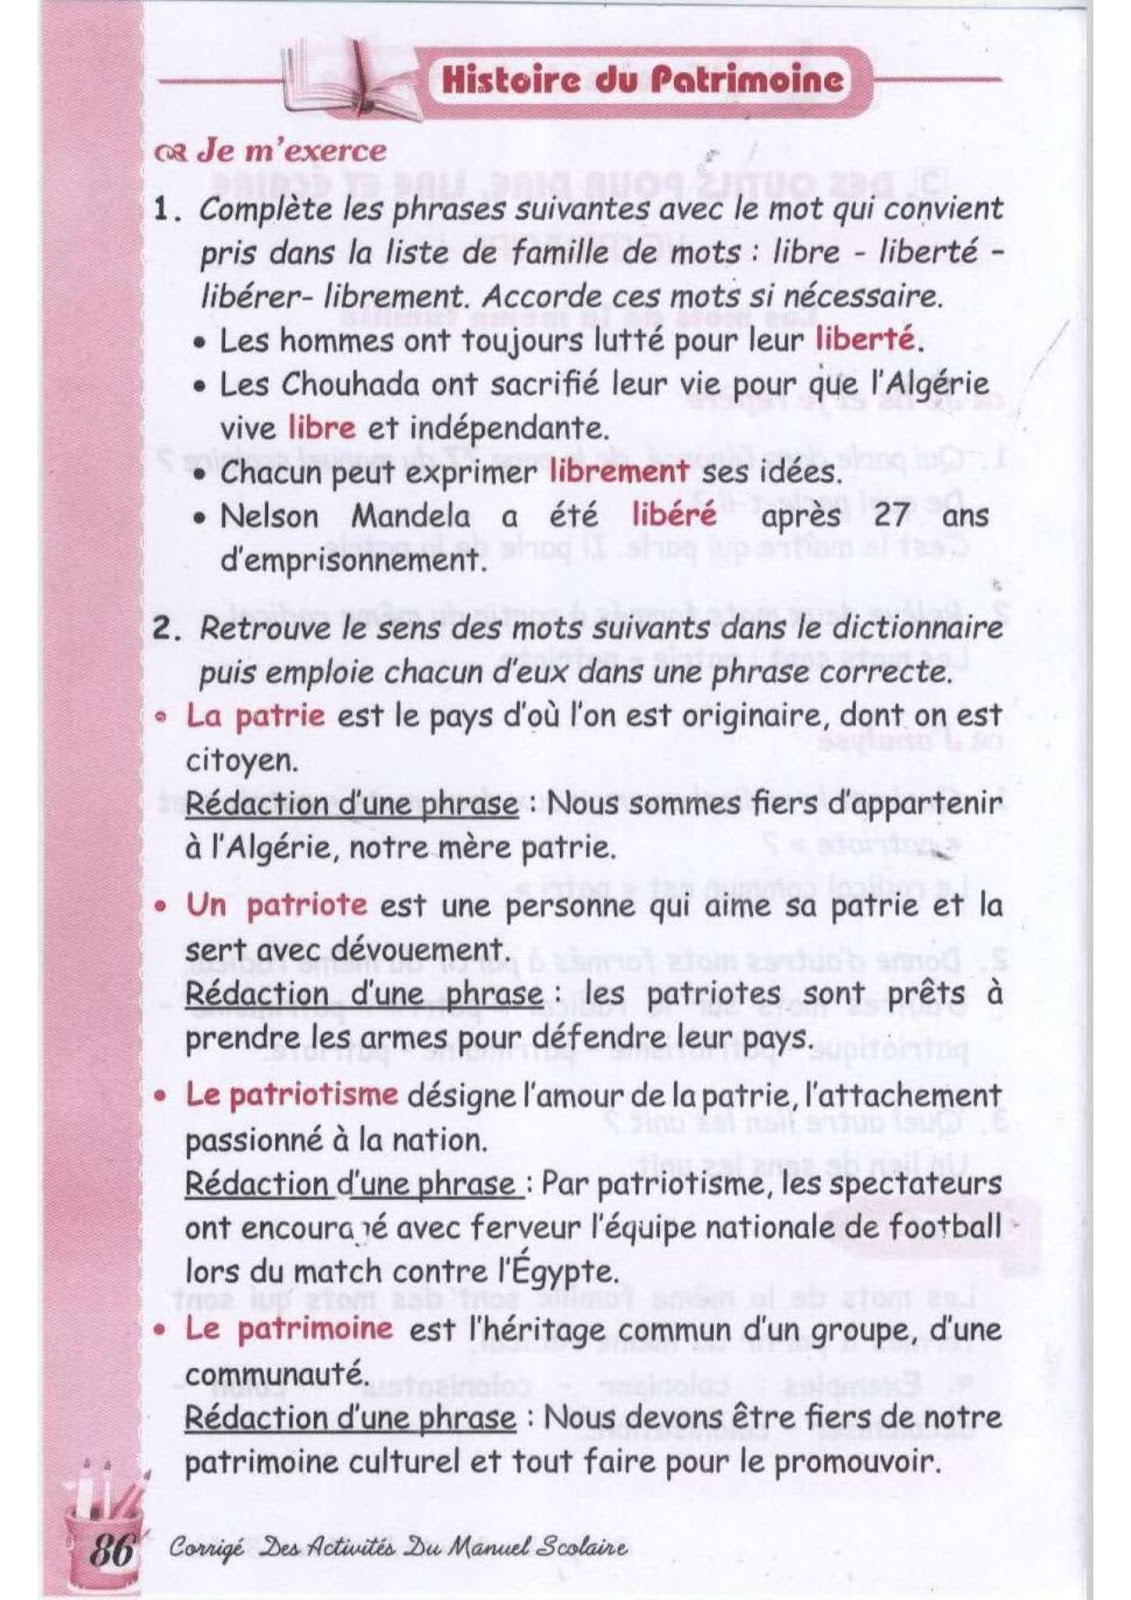 حل تمارين صفحة 78 الفرنسية للسنة الثالثة متوسط - الجيل الثاني